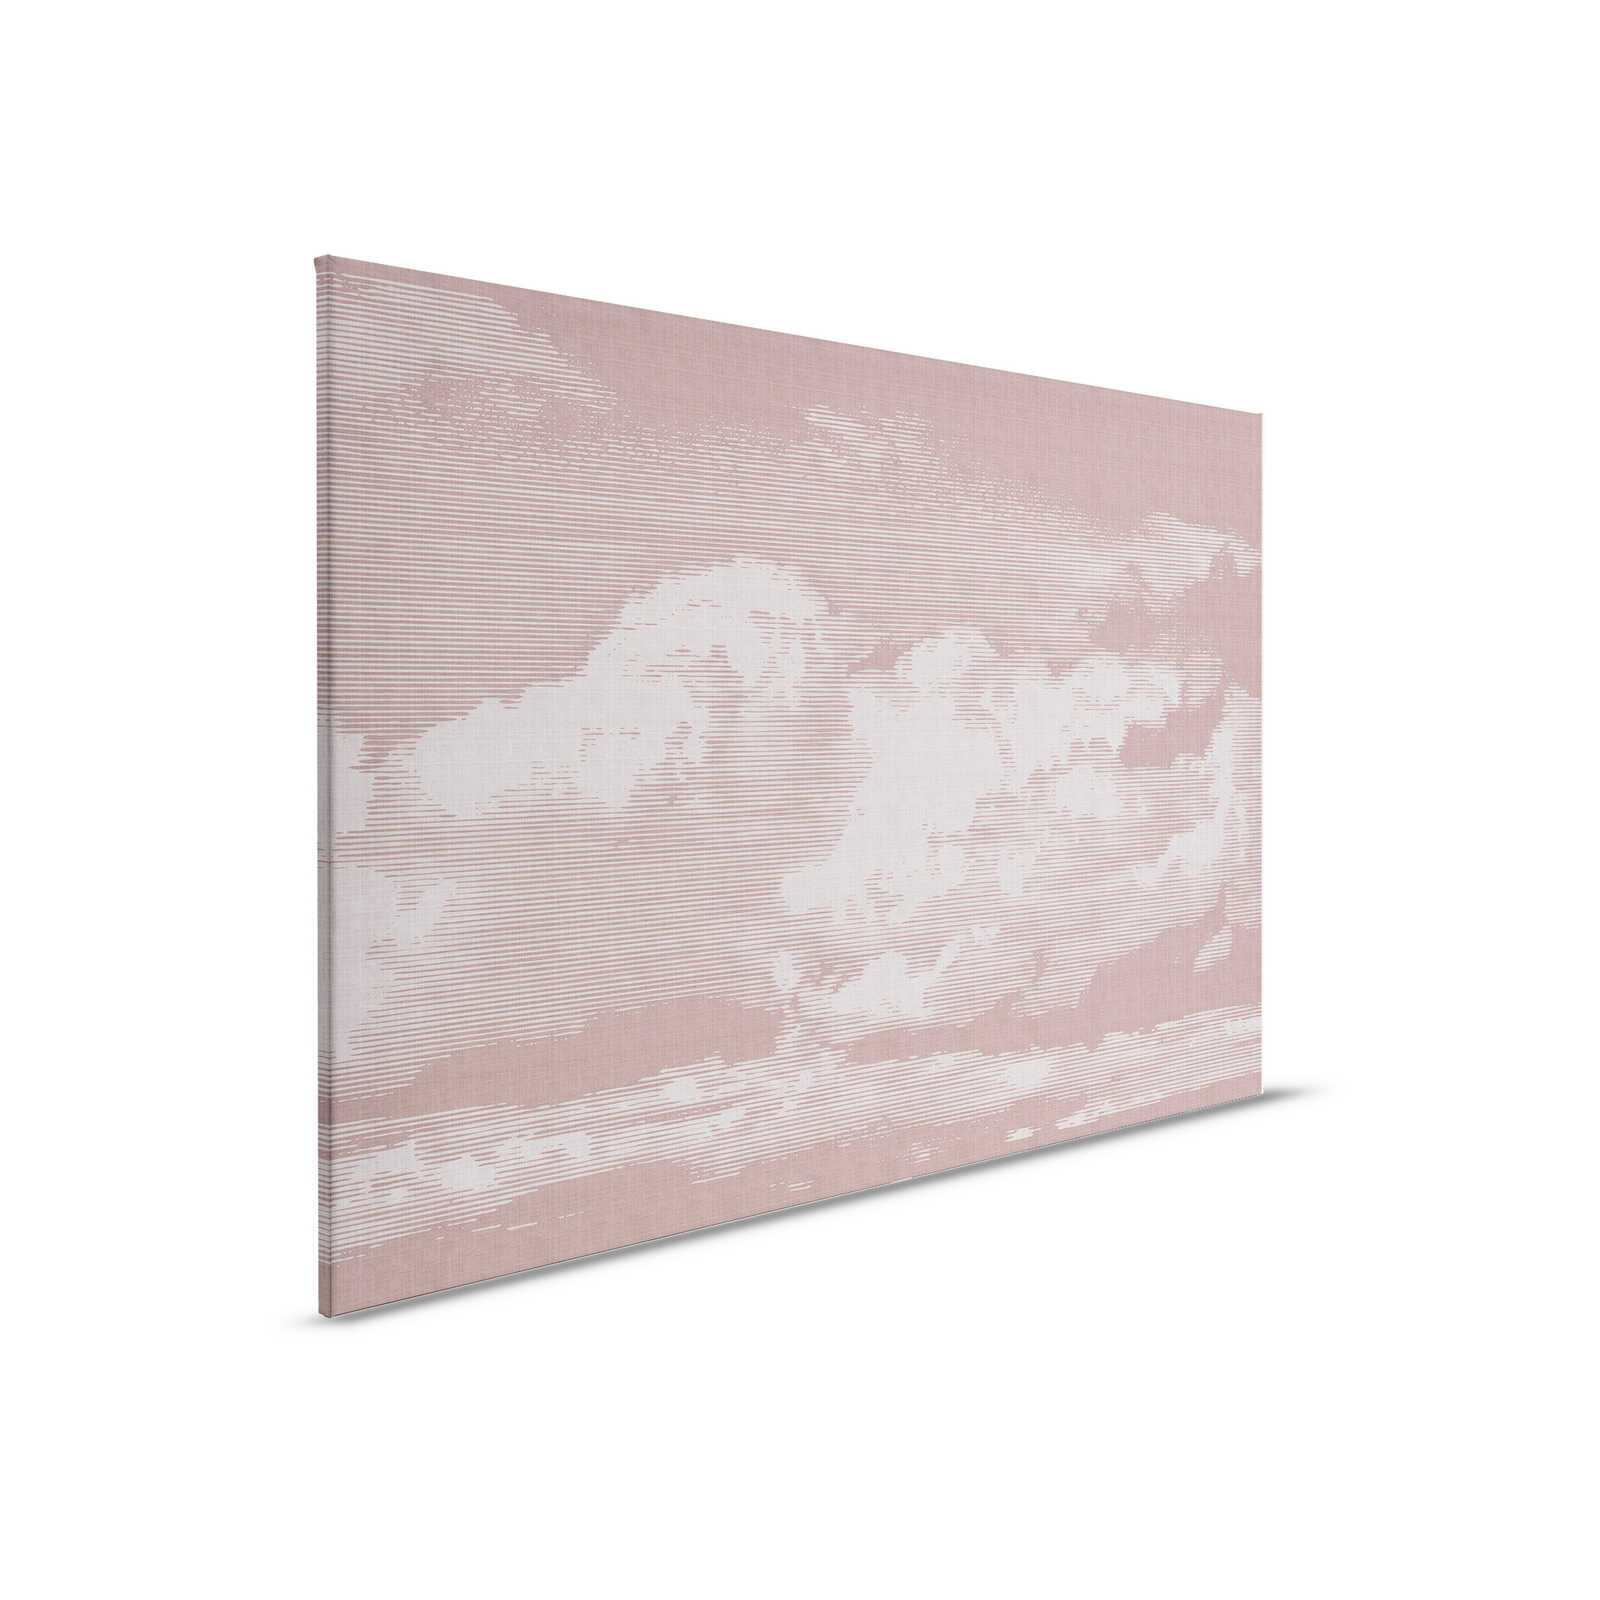 Clouds 3 - Himmlisches Leinwandbild mit Wolkenmotiv - Naturleinen Optik – 0,90 m x 0,60 m
